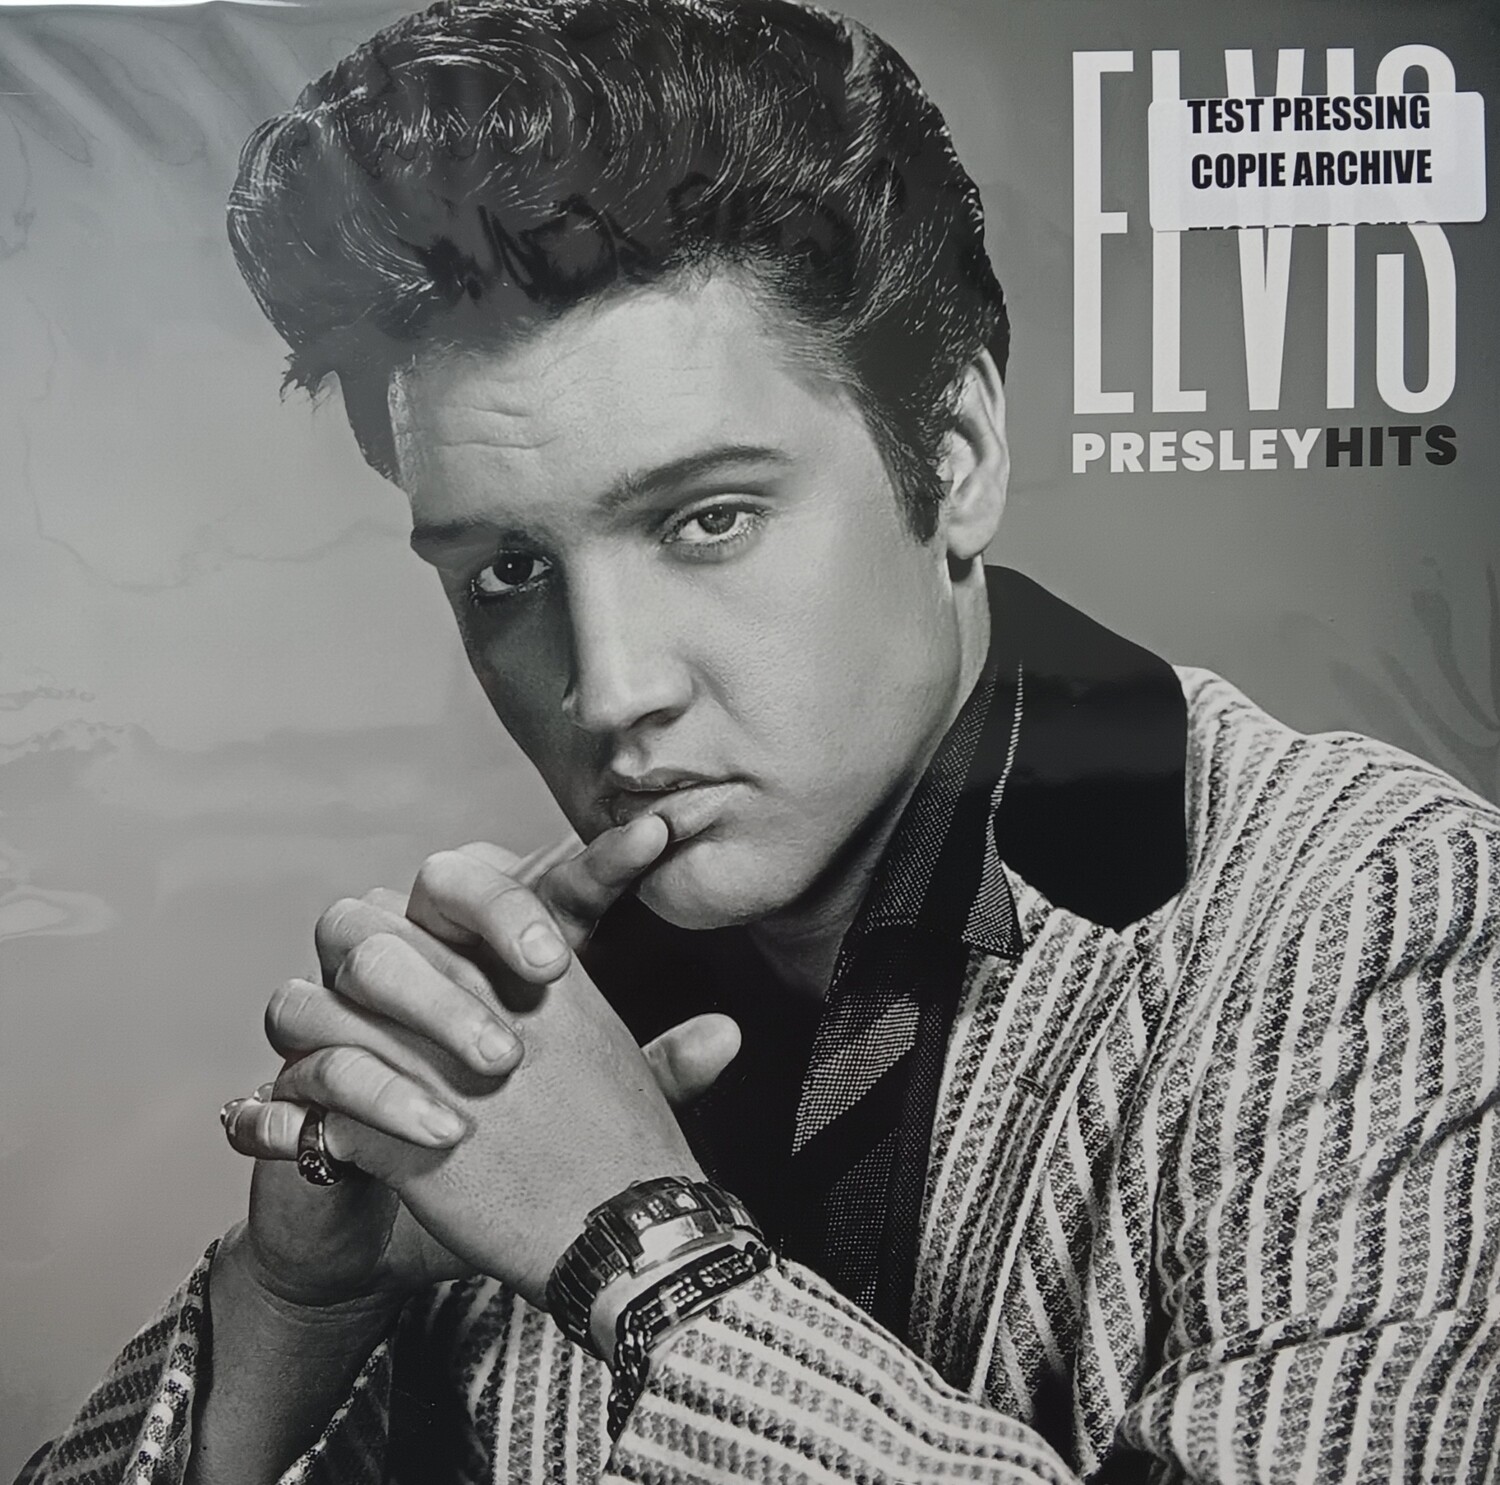 ELVIS PRESLEY - Elvis Presley Hits (TEST PRESSING / COPIE ARCHIVE)